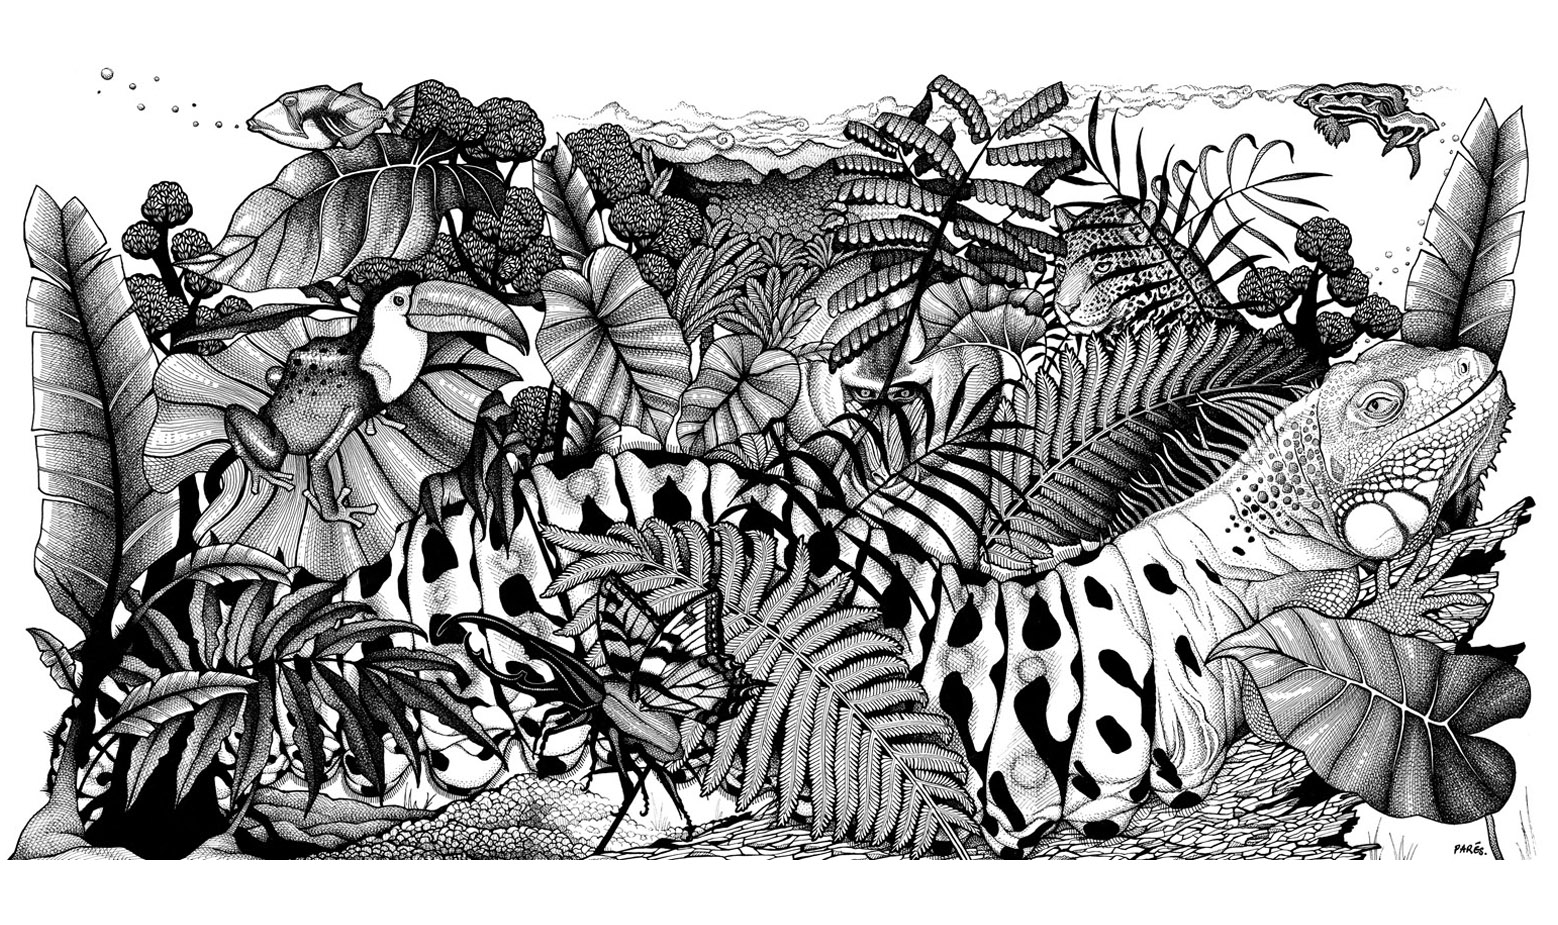 Hervorragende Schwarz-Weiß-Zeichnung zum Ausdrucken und Ausmalen mit üppiger Vegetation, die viele Tiere versteckt ... Indem man sie einfärbt, damit sie besser zu sehen sind! Jede Menge Details